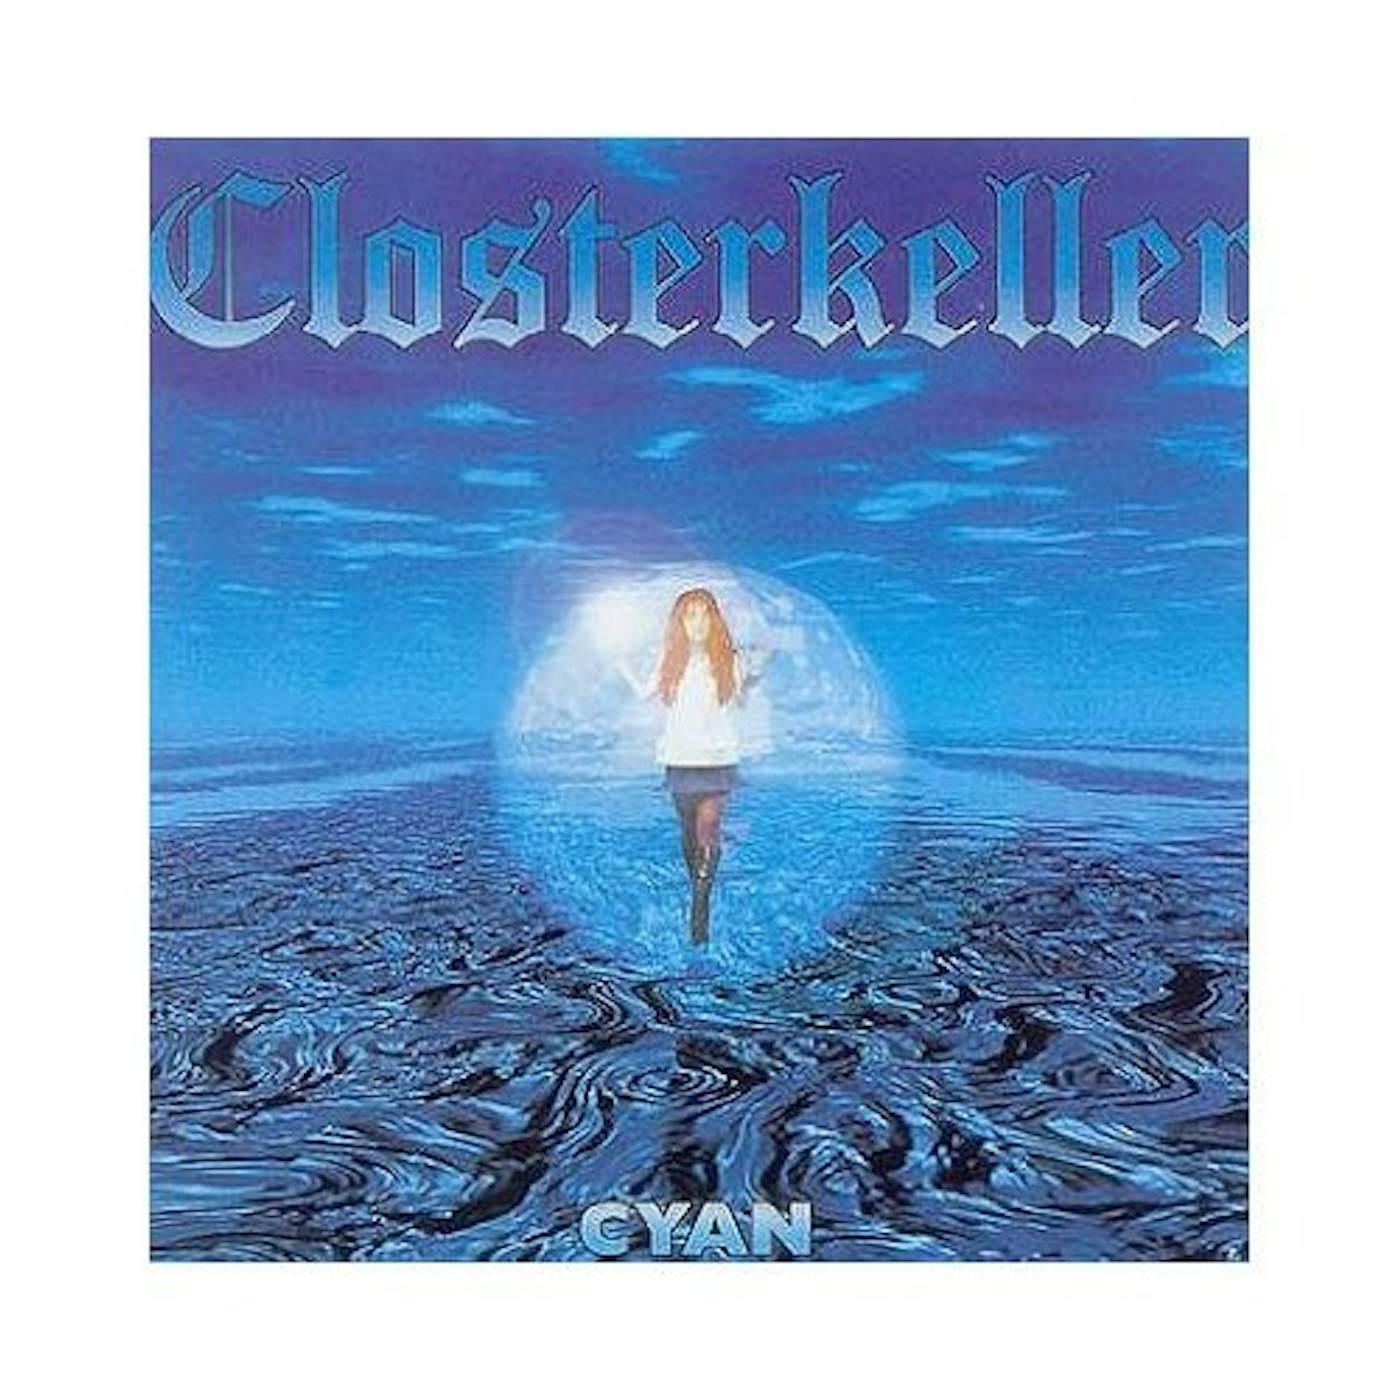 Closterkeller CYAN CD